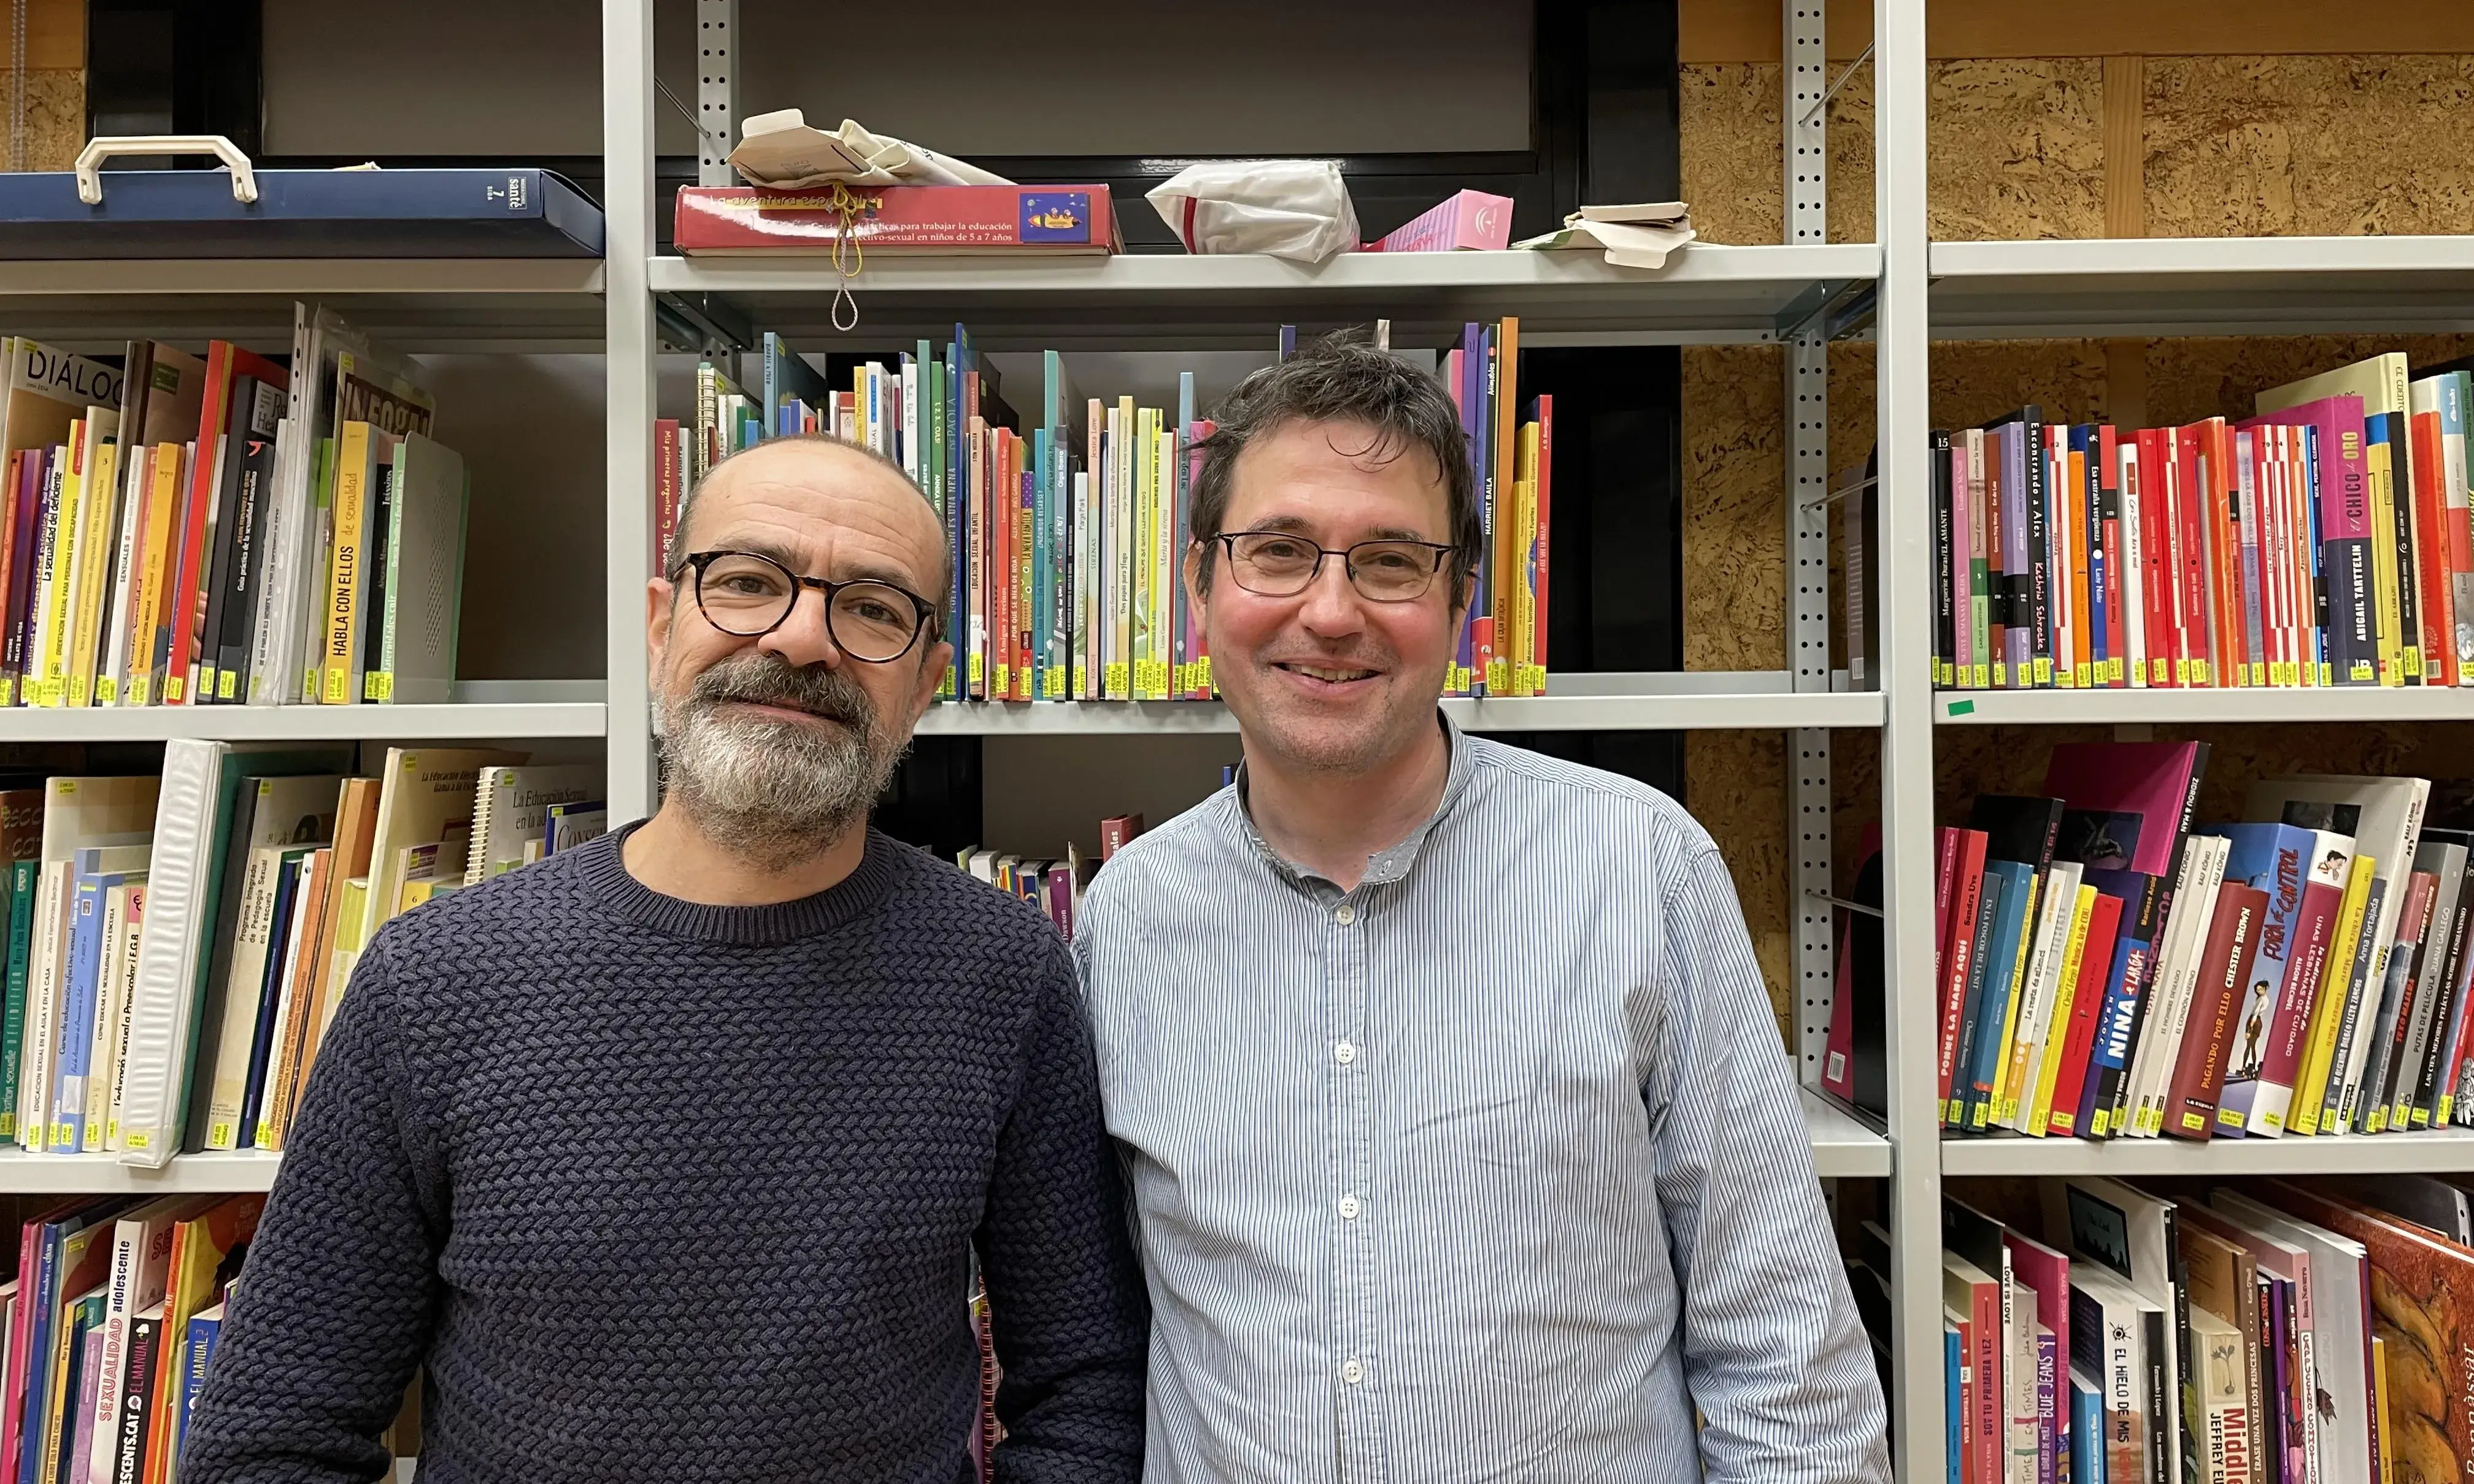 A l'esquerra, David Paricio, coordinador de l'entitat SIDA STUDI, i a la dreta, Víctor León, bibliotecari de l'entitat. Font: Colectic.